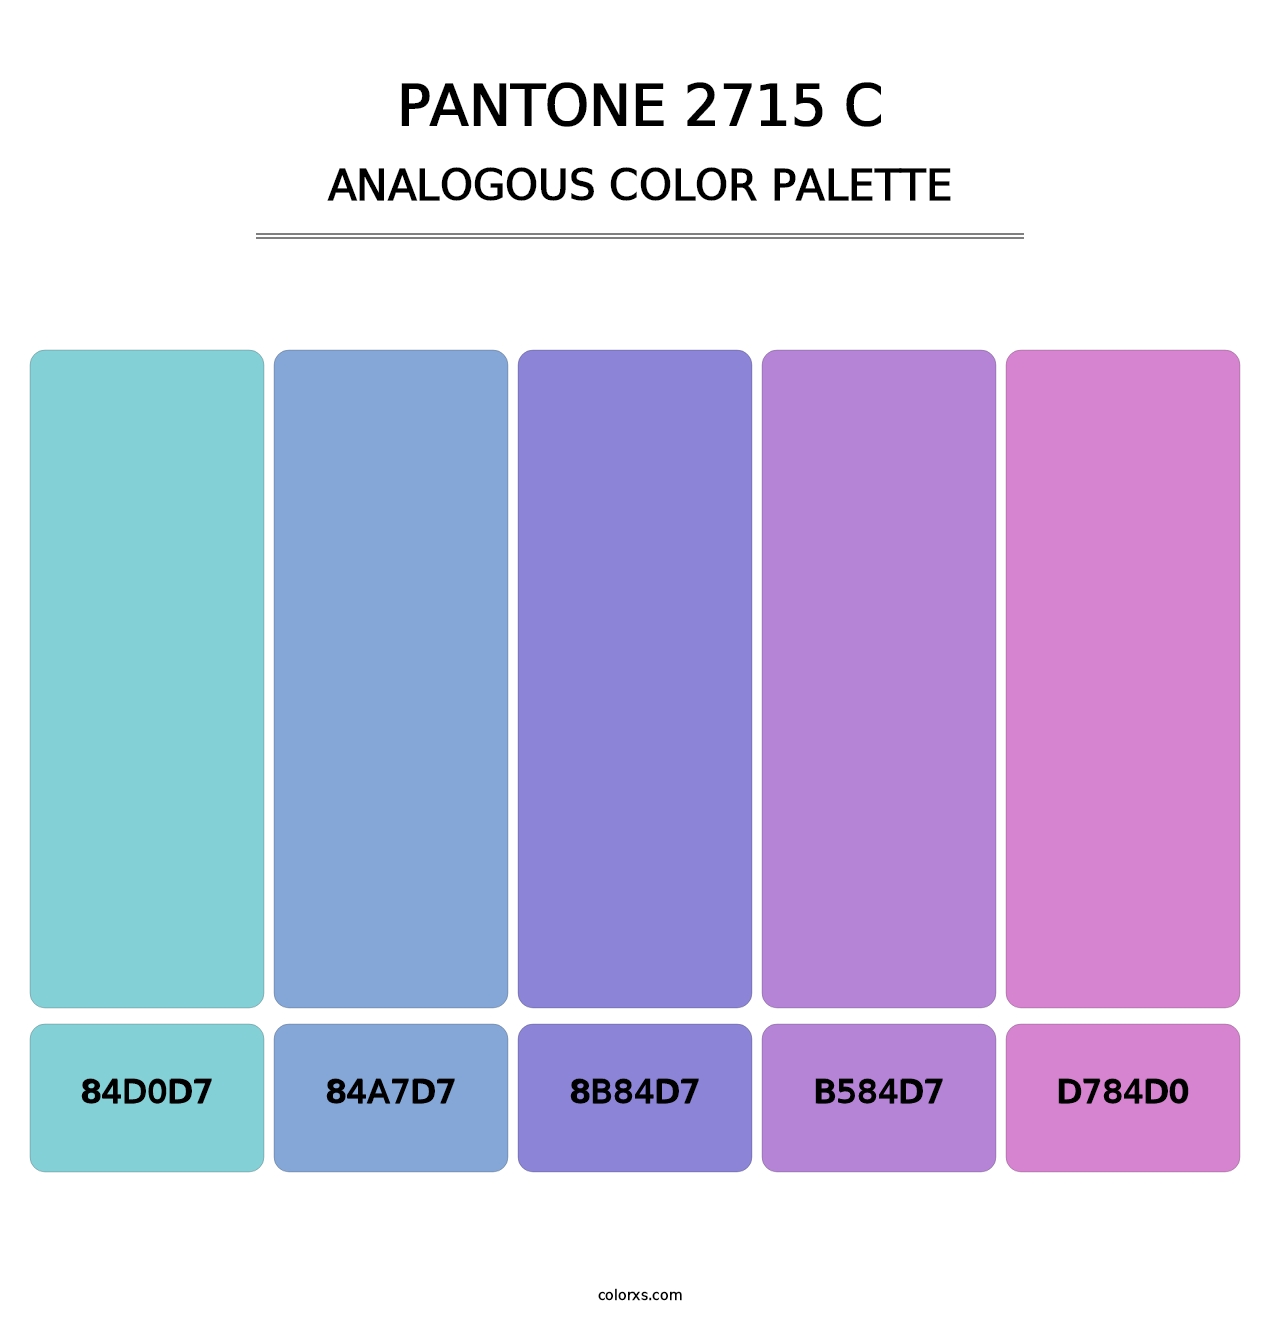 PANTONE 2715 C - Analogous Color Palette